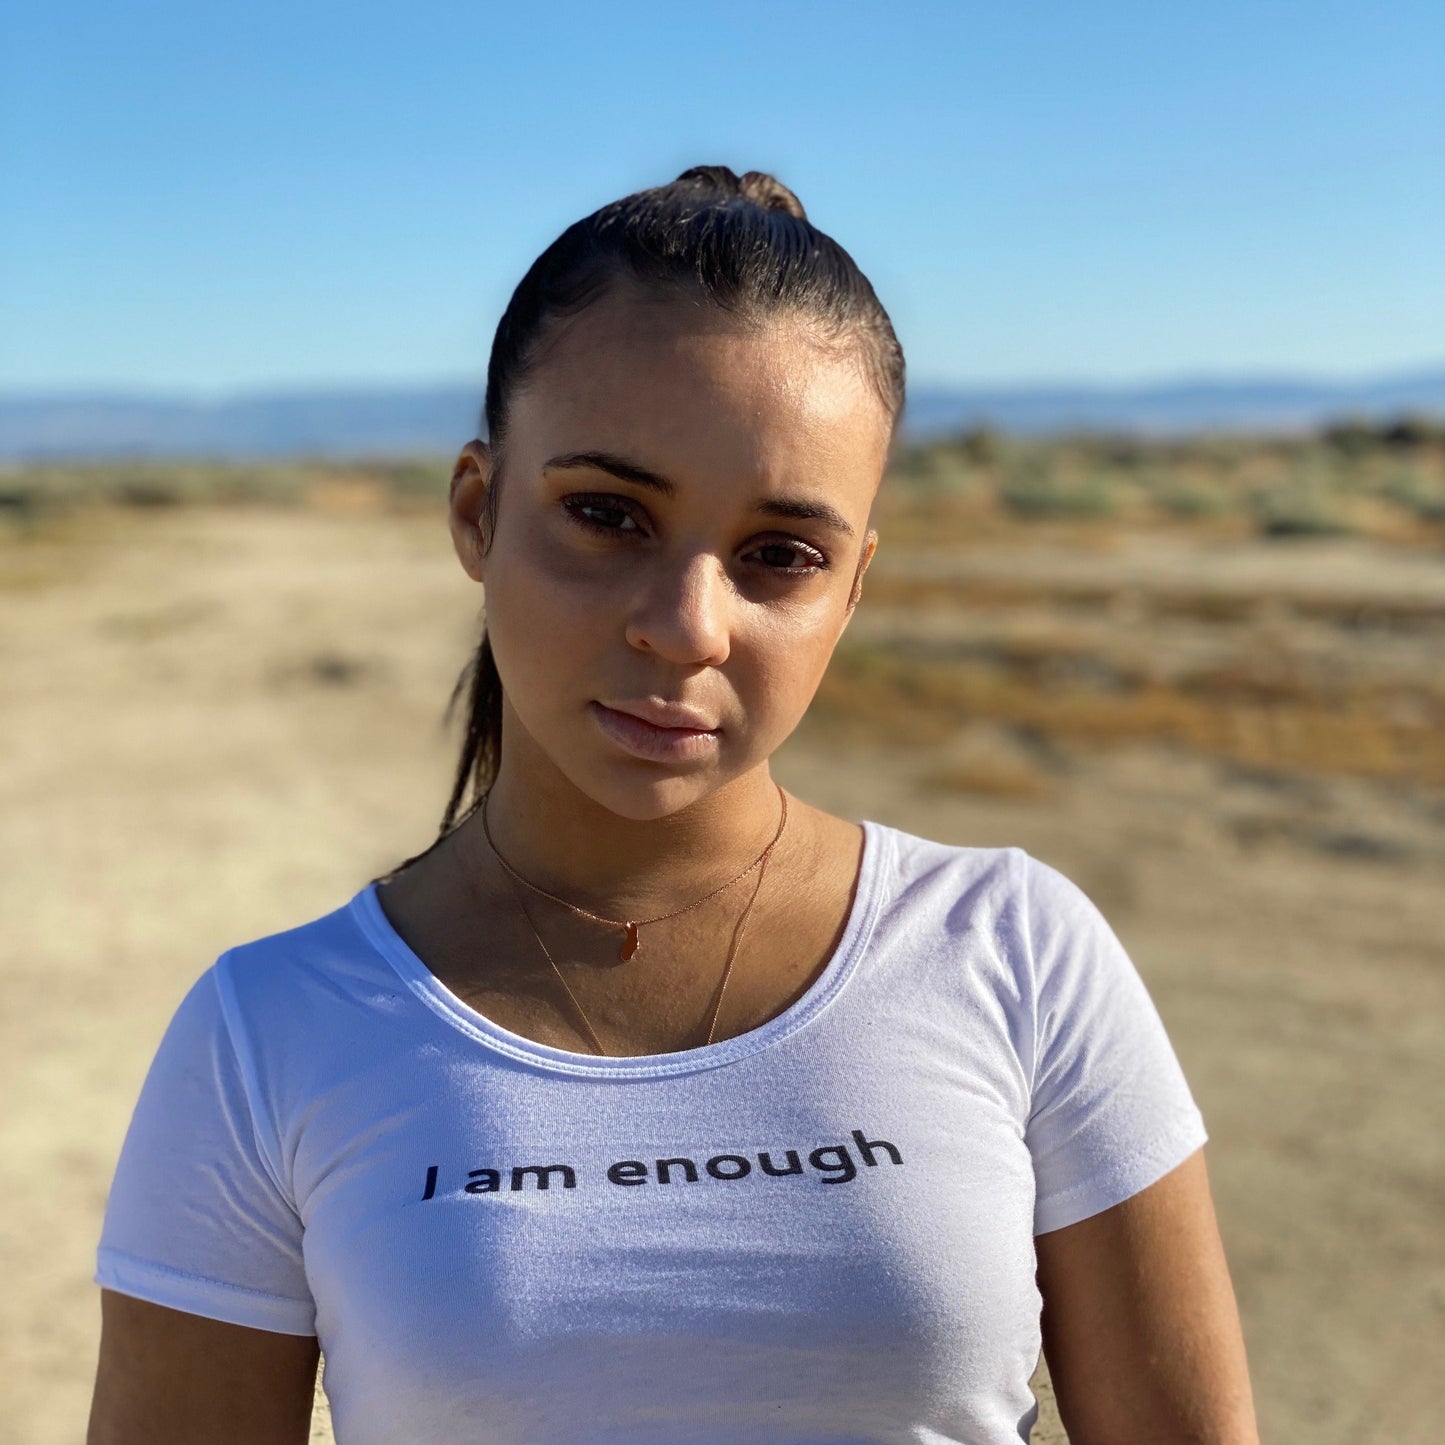 I am enough | Crop Top